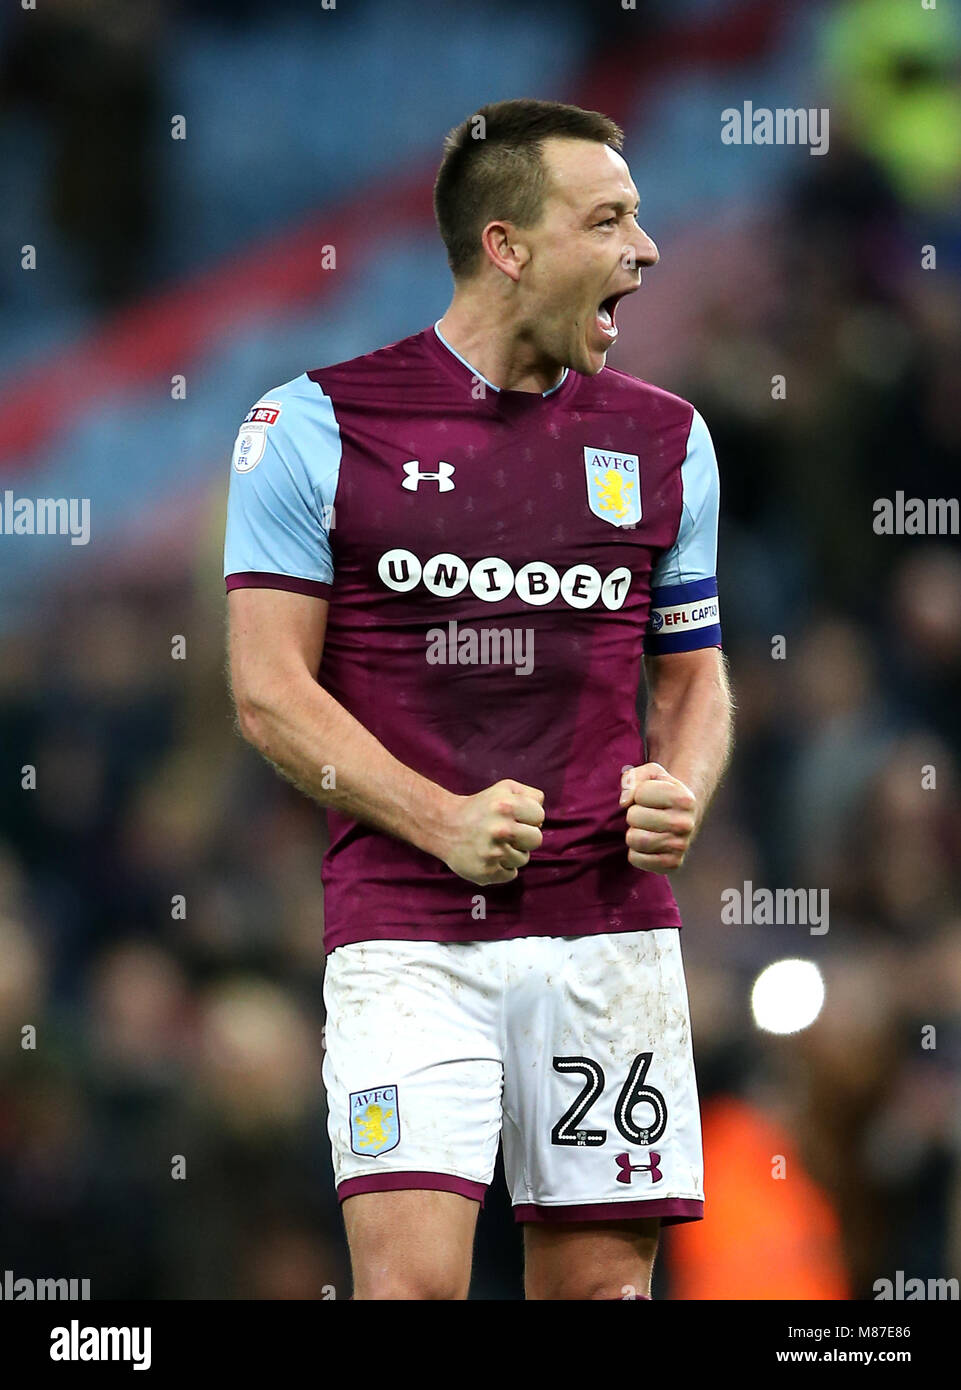 Aston Villa's John Terry celebrates after the final whistle Stock Photo